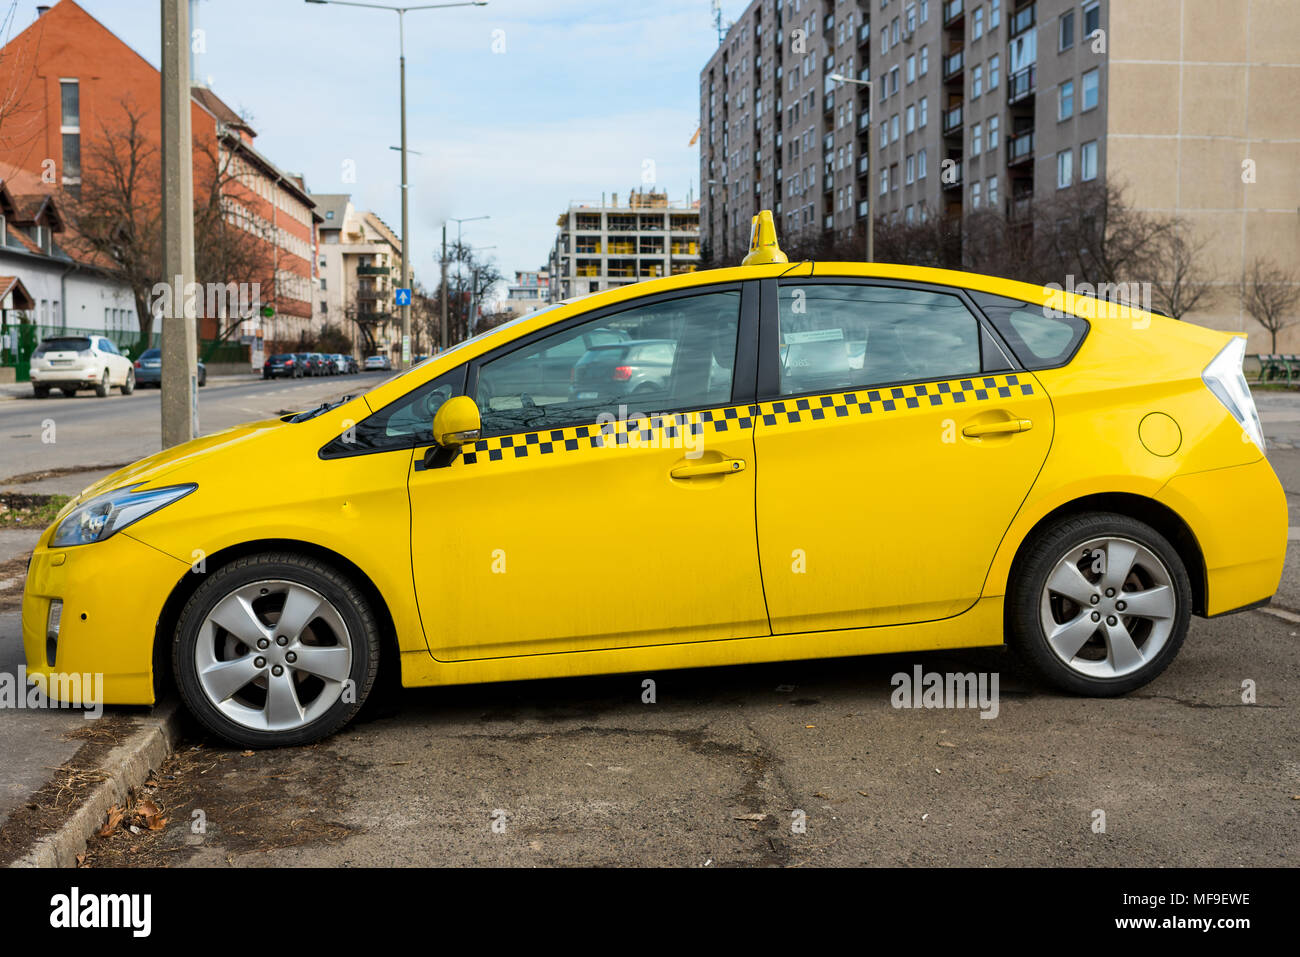 Moderne Taxi in gelber Farbe Stockfotografie - Alamy